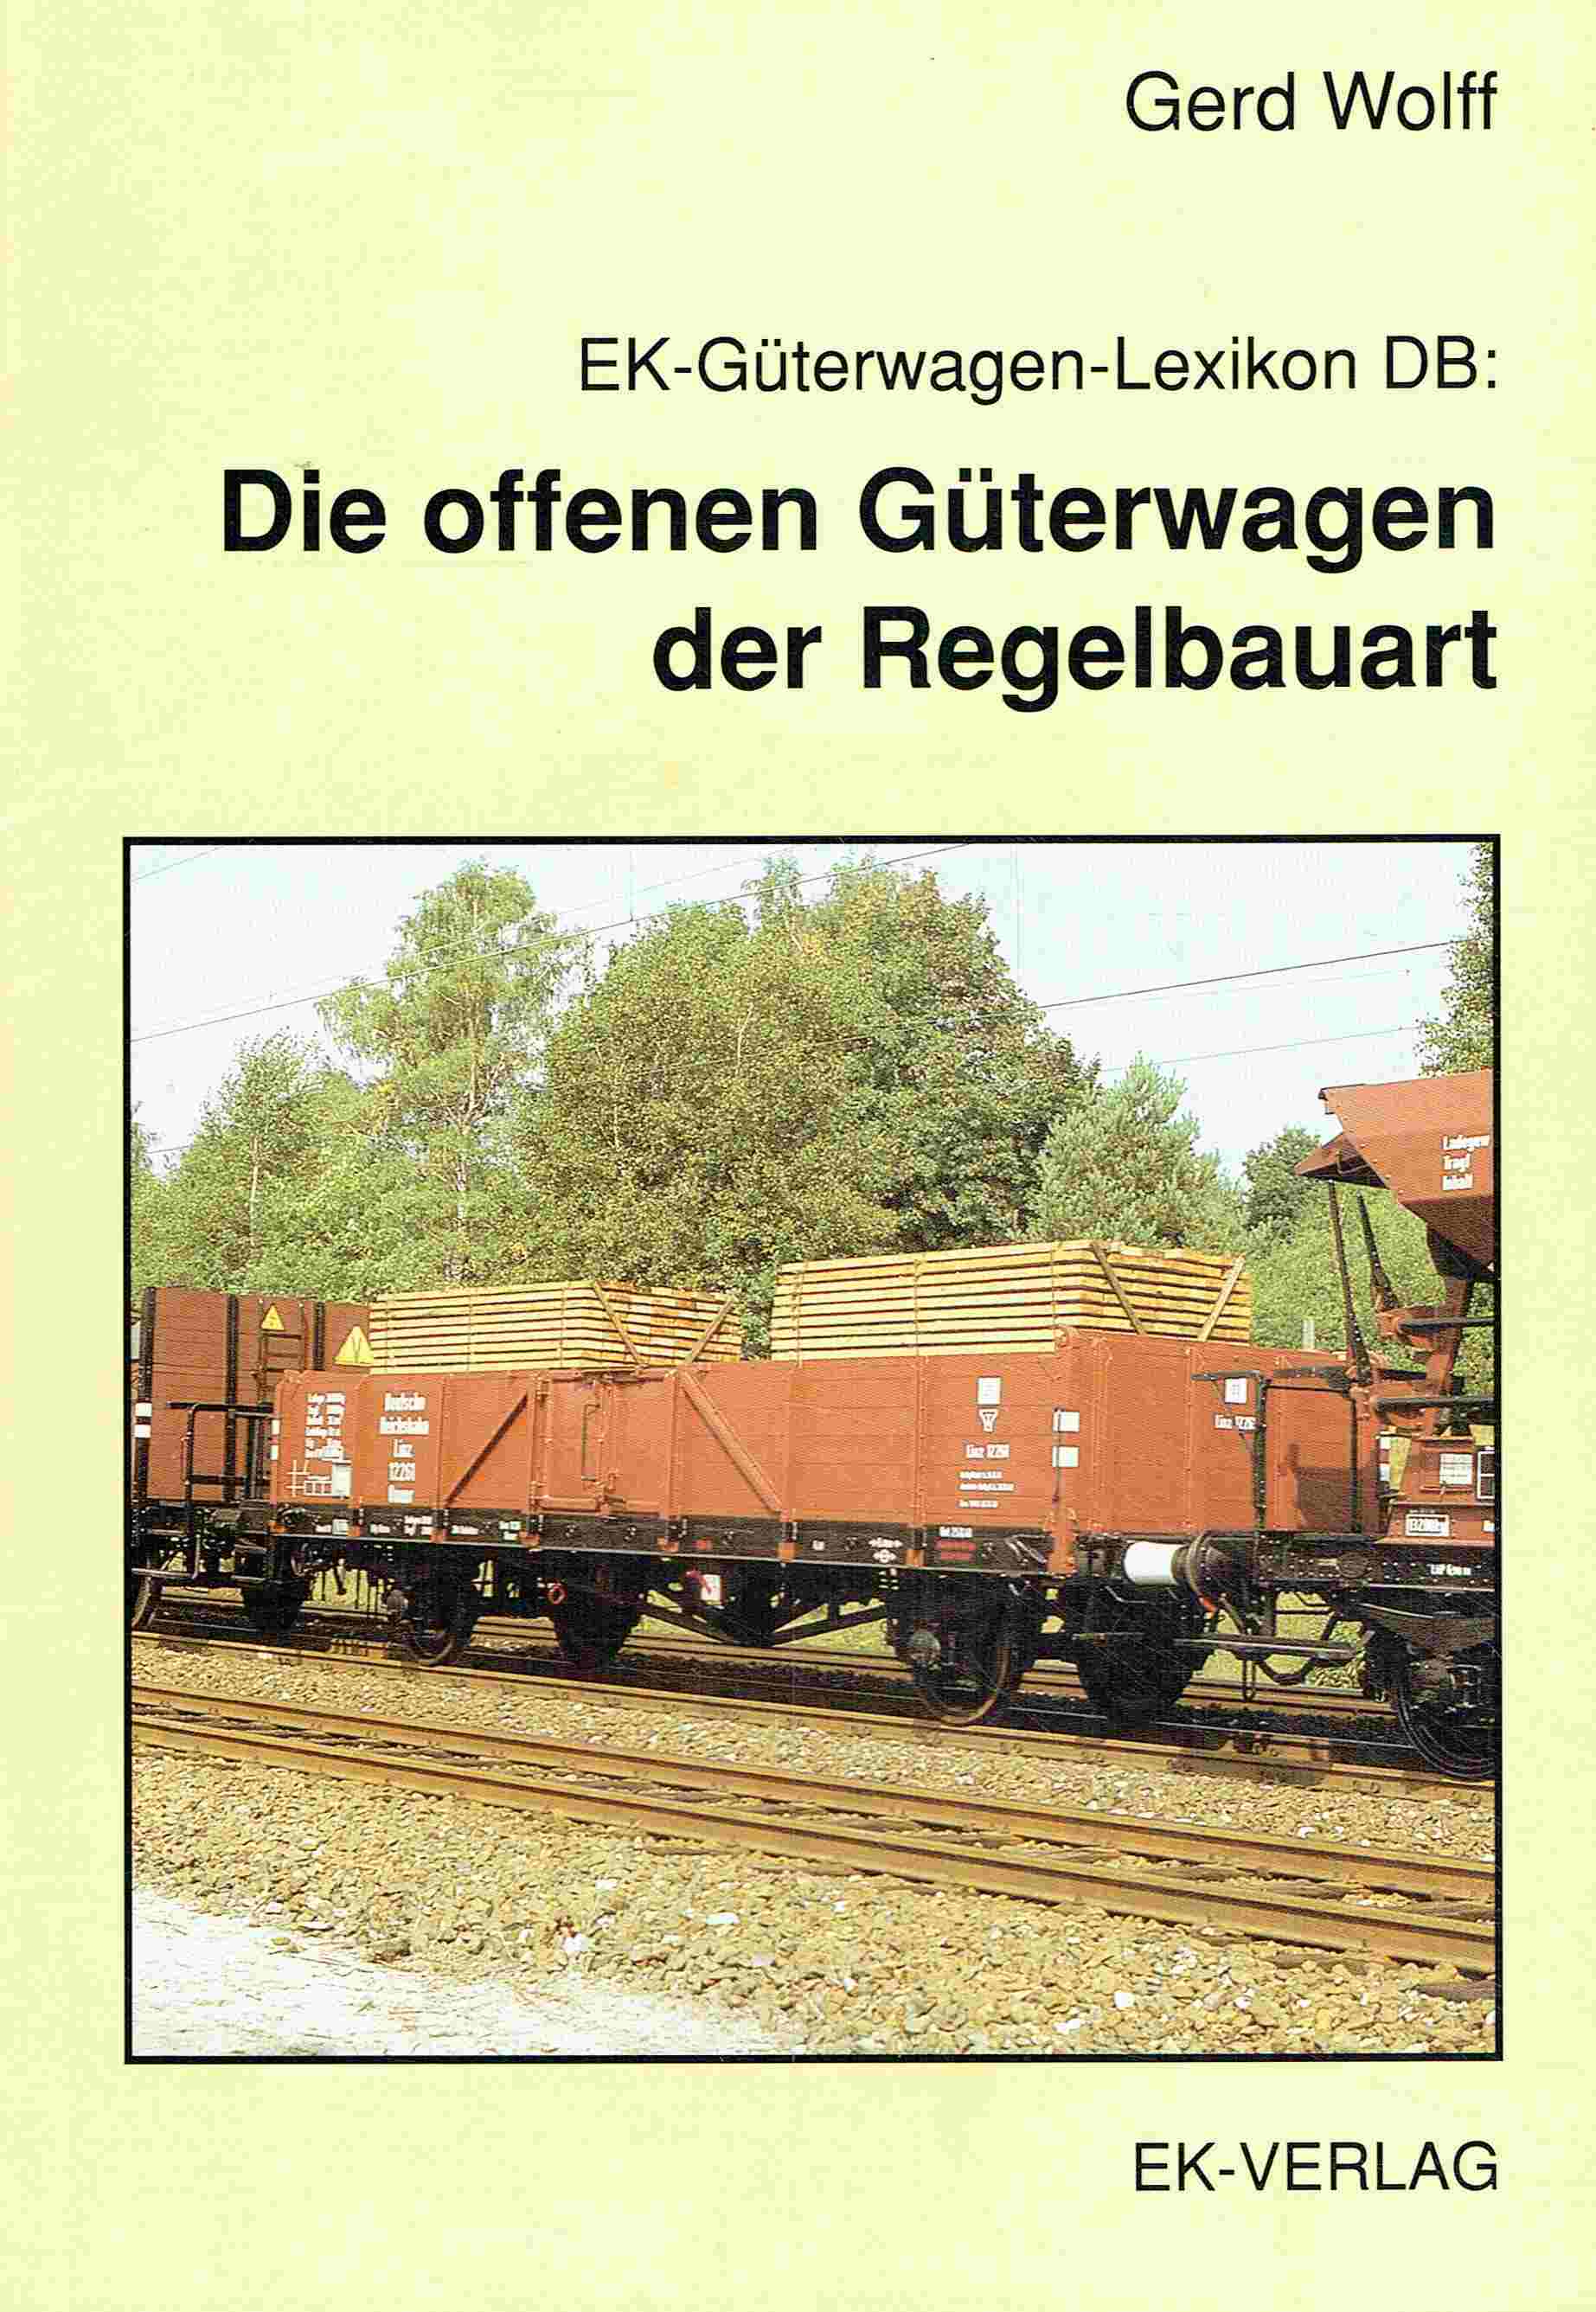 EK-Güterwagen-Lexikon DB: Die offenen Güterwagen der Regelbauart. - Wolff, Gerd